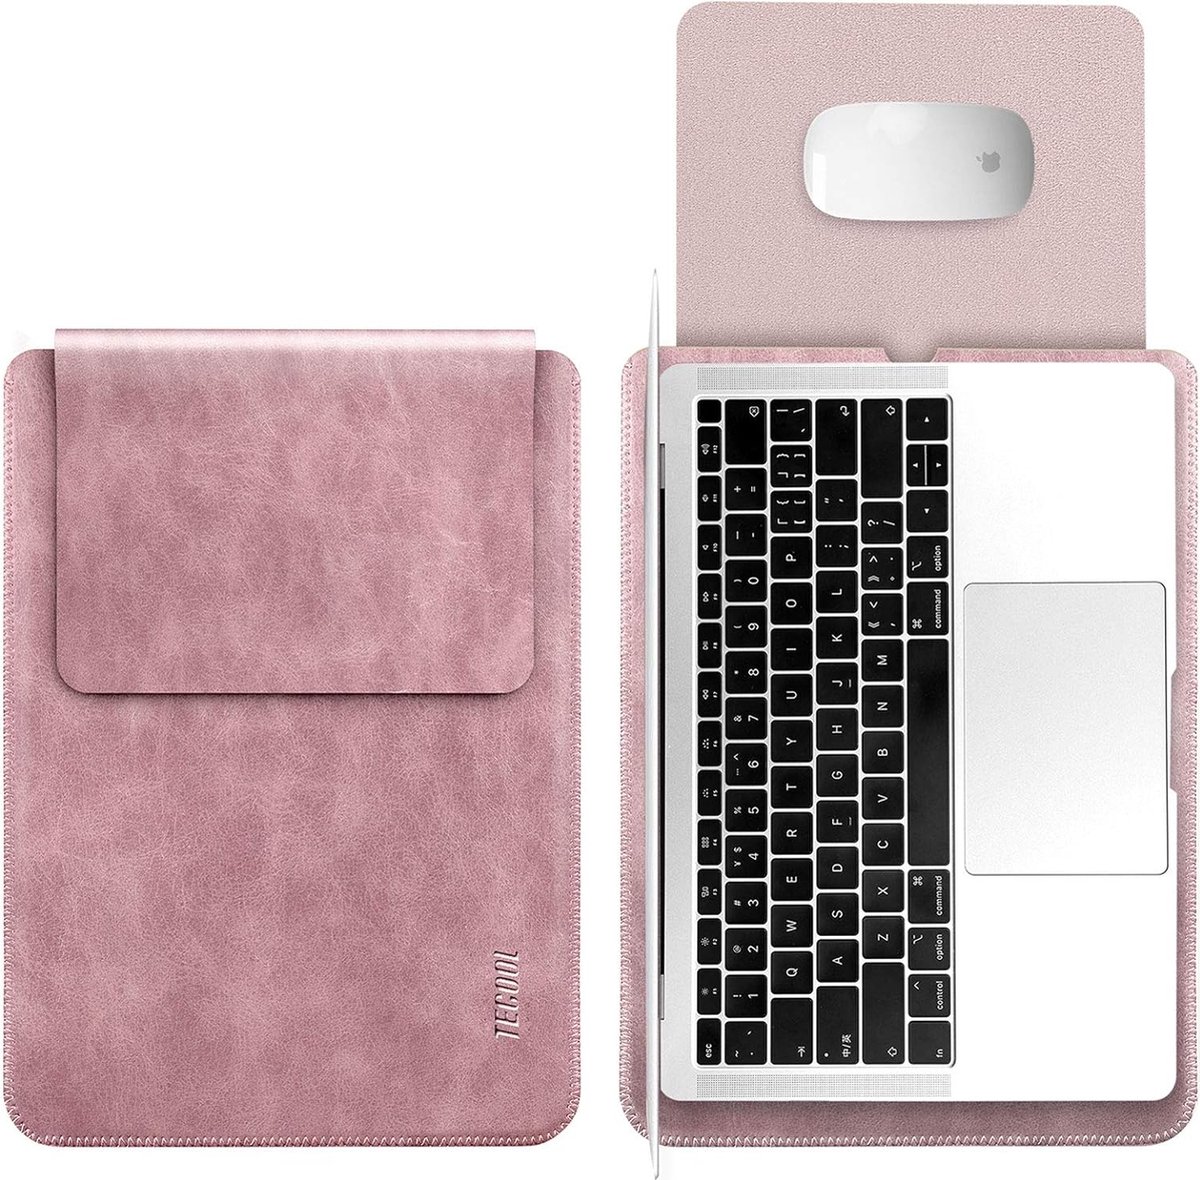 Roze laptophoes met muismat - 14 inch - Hoogwaardig PU leer - 38 x 27 cm - Laptop beschermer - Waterafstotend - 280 gram - Laptopcover - Laptoptas bescherming